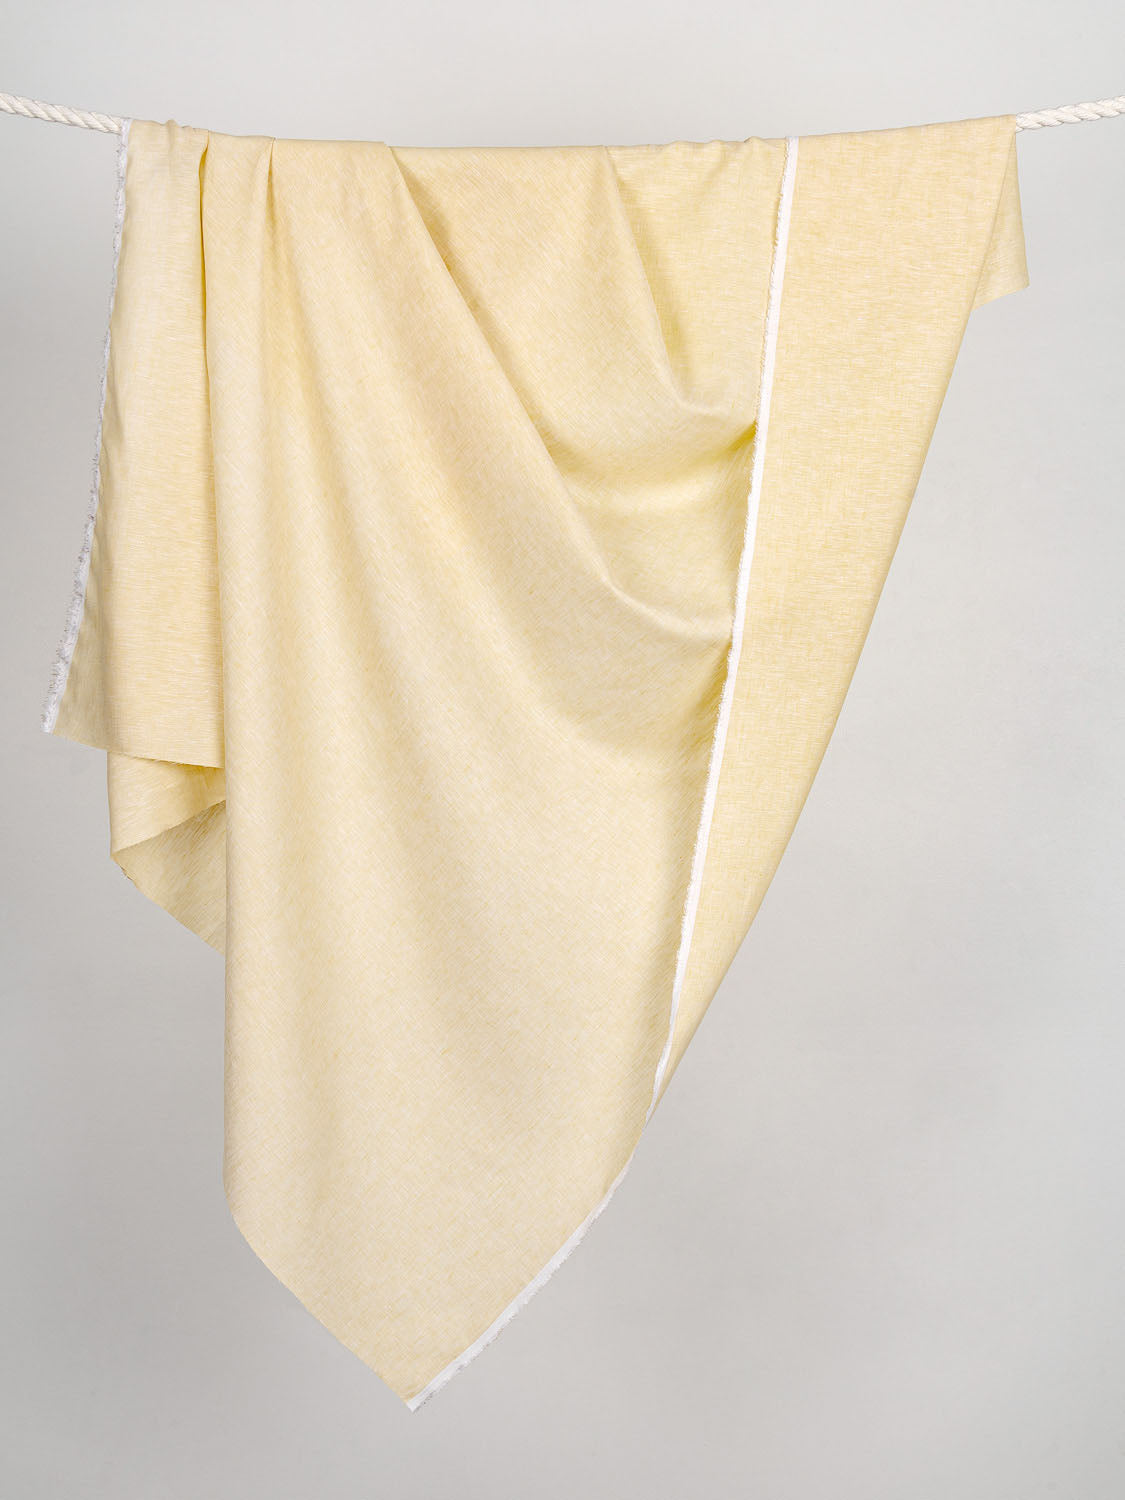 Yarn Dyed Chambray Linen - Sunbeam | Core Fabrics